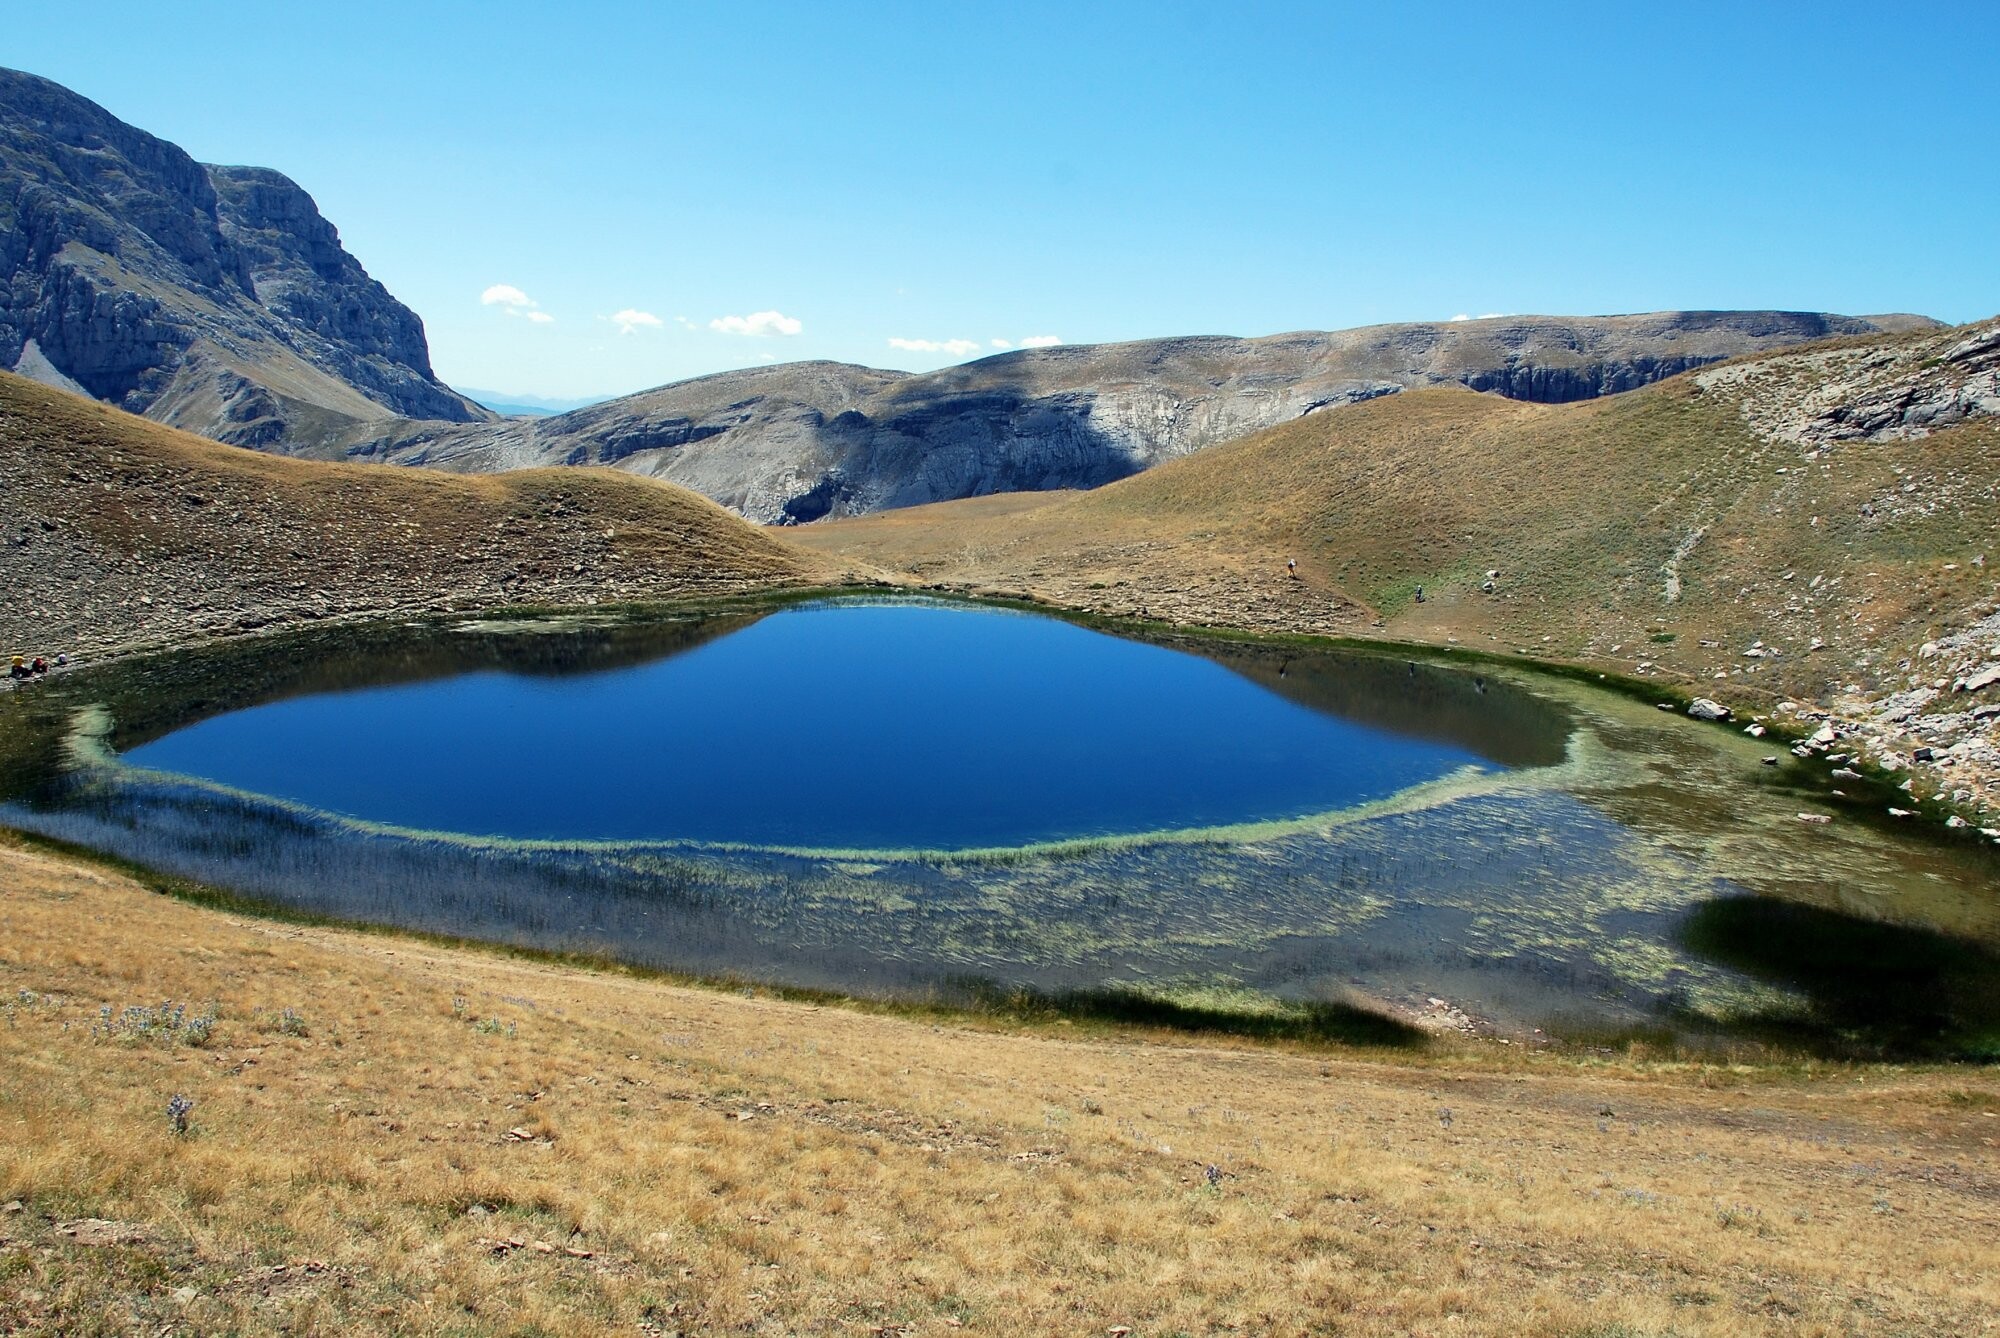 More information about "Η αλπική περιοχή της Δρακολίμνης στον Σμόλικα σε υψόμετρο 2.050 μέτρα"